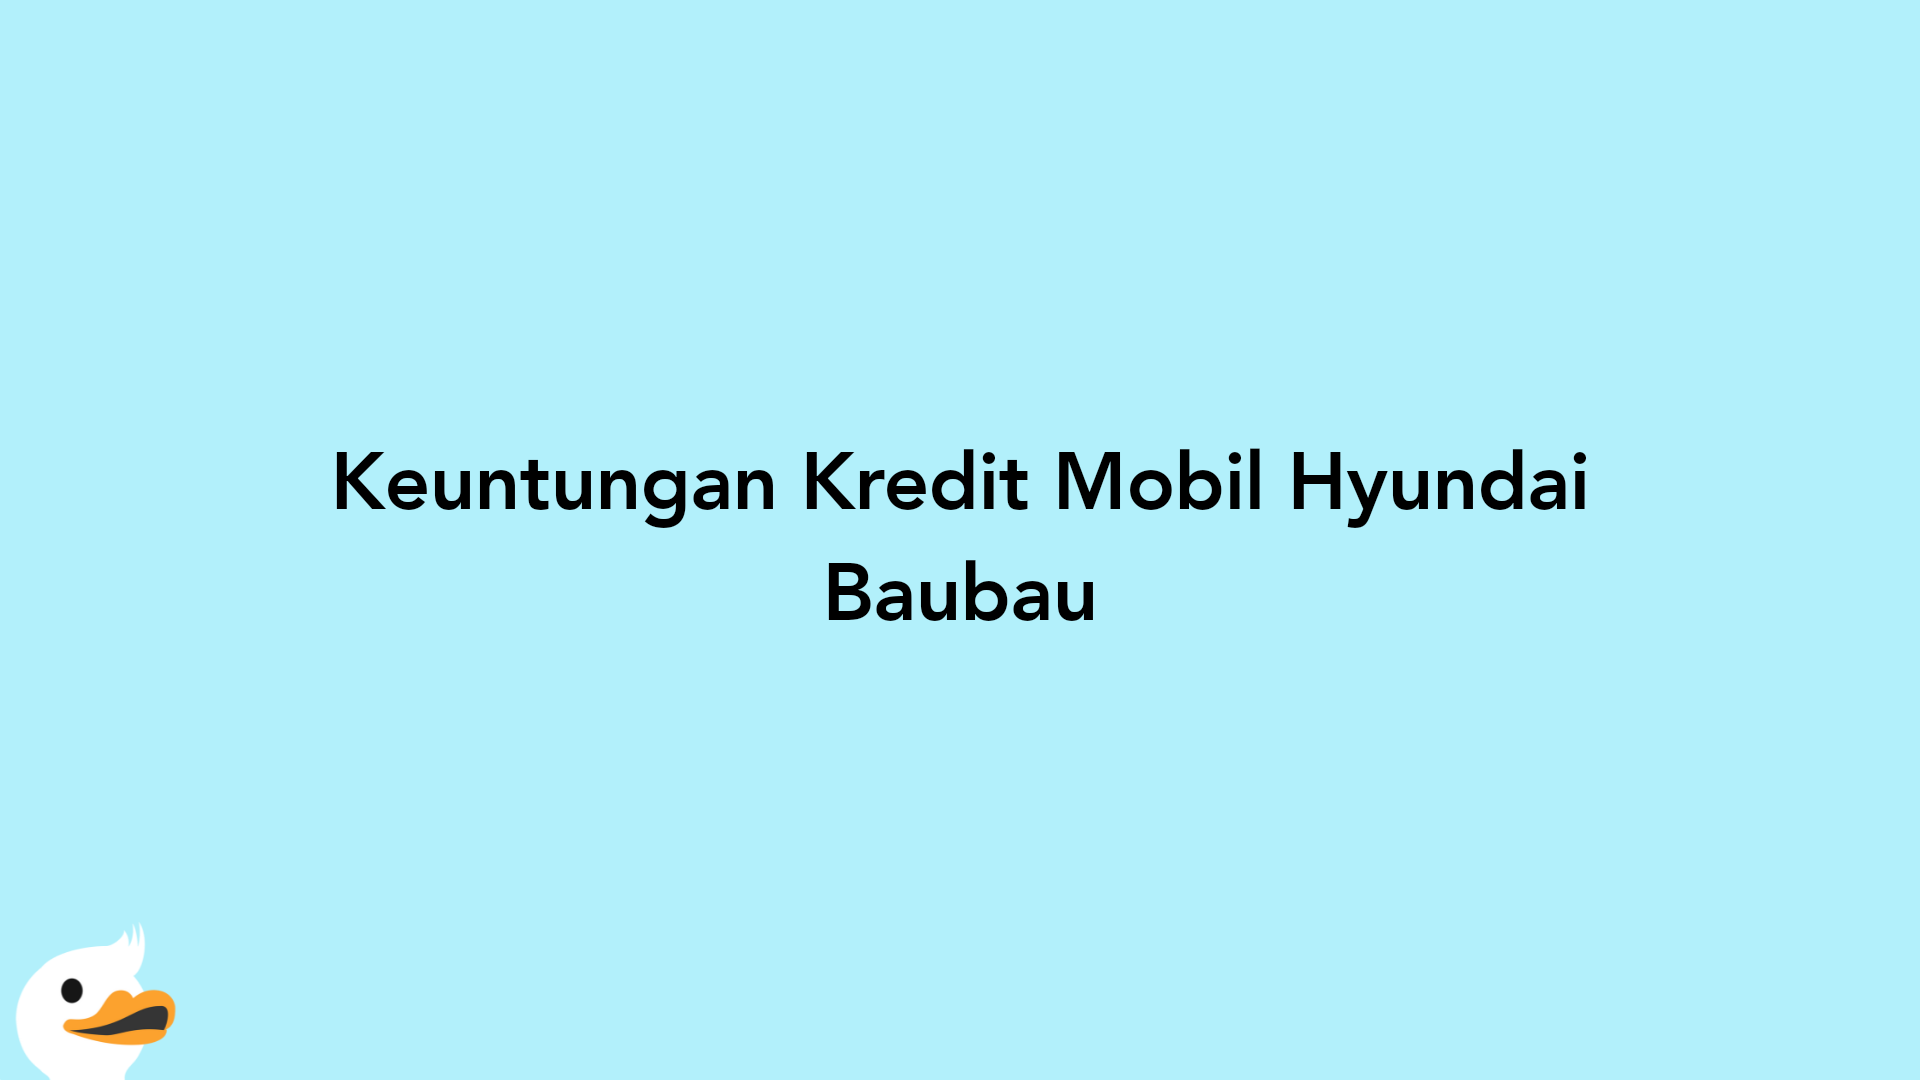 Keuntungan Kredit Mobil Hyundai Baubau